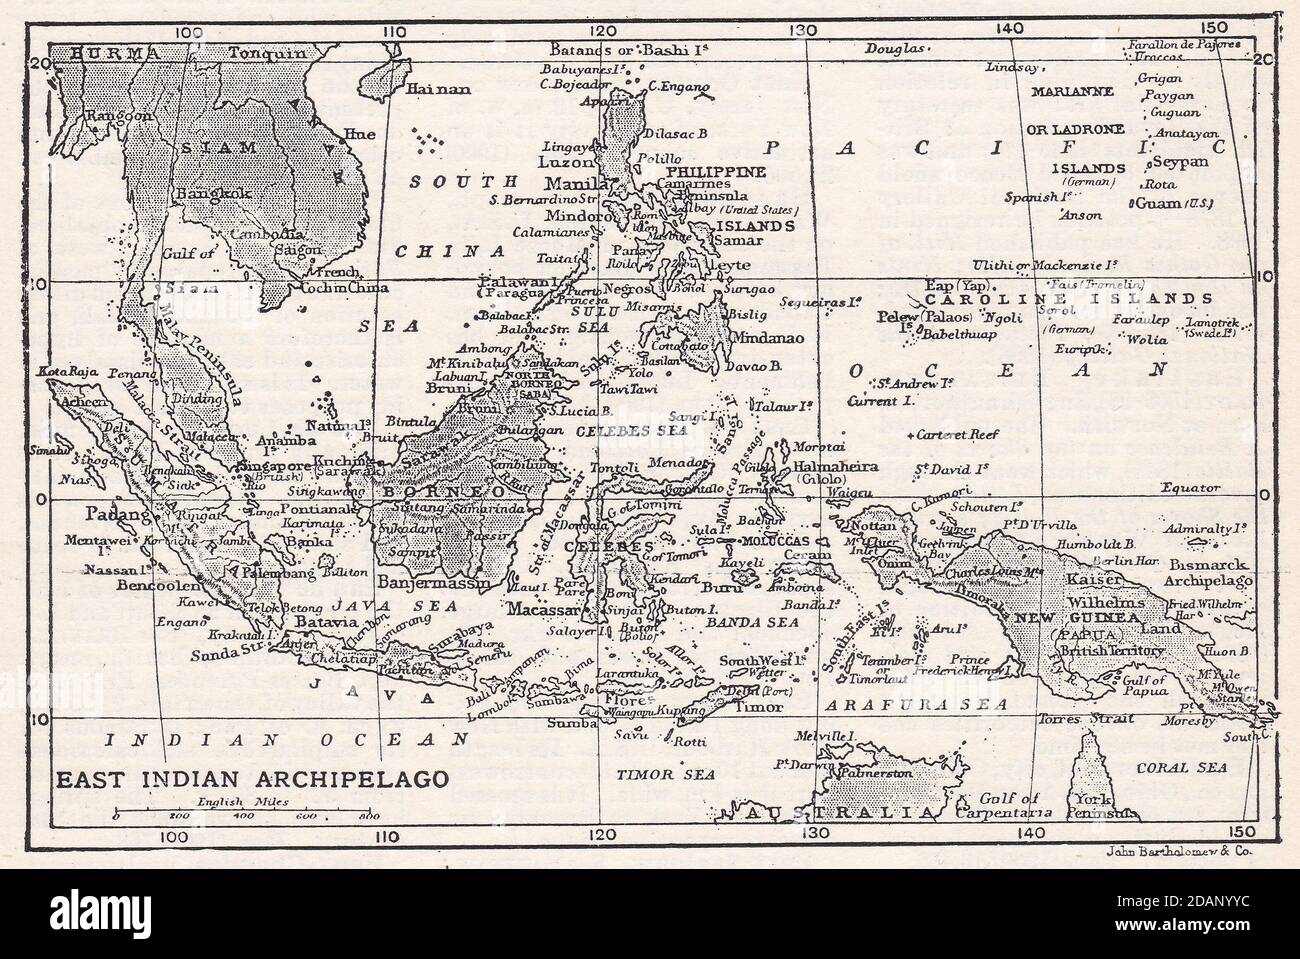 Mappa d'epoca dell'arcipelago delle Indie Orientali del 1900 Foto Stock